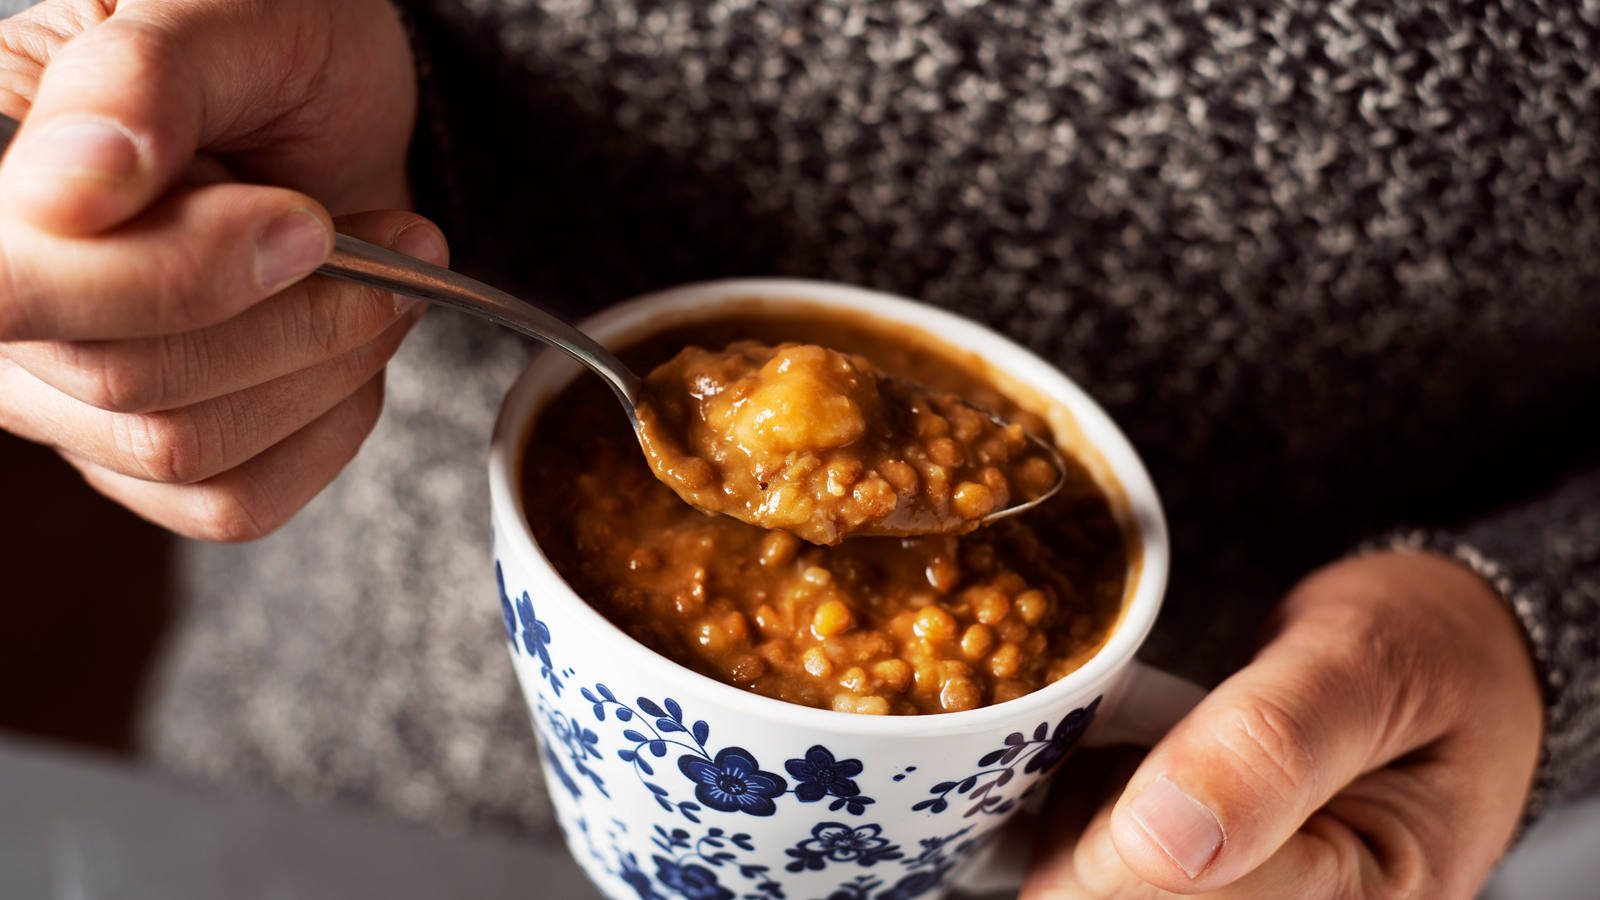 Ricette per la zuppa di lenticchie: semplici, gustose e sane